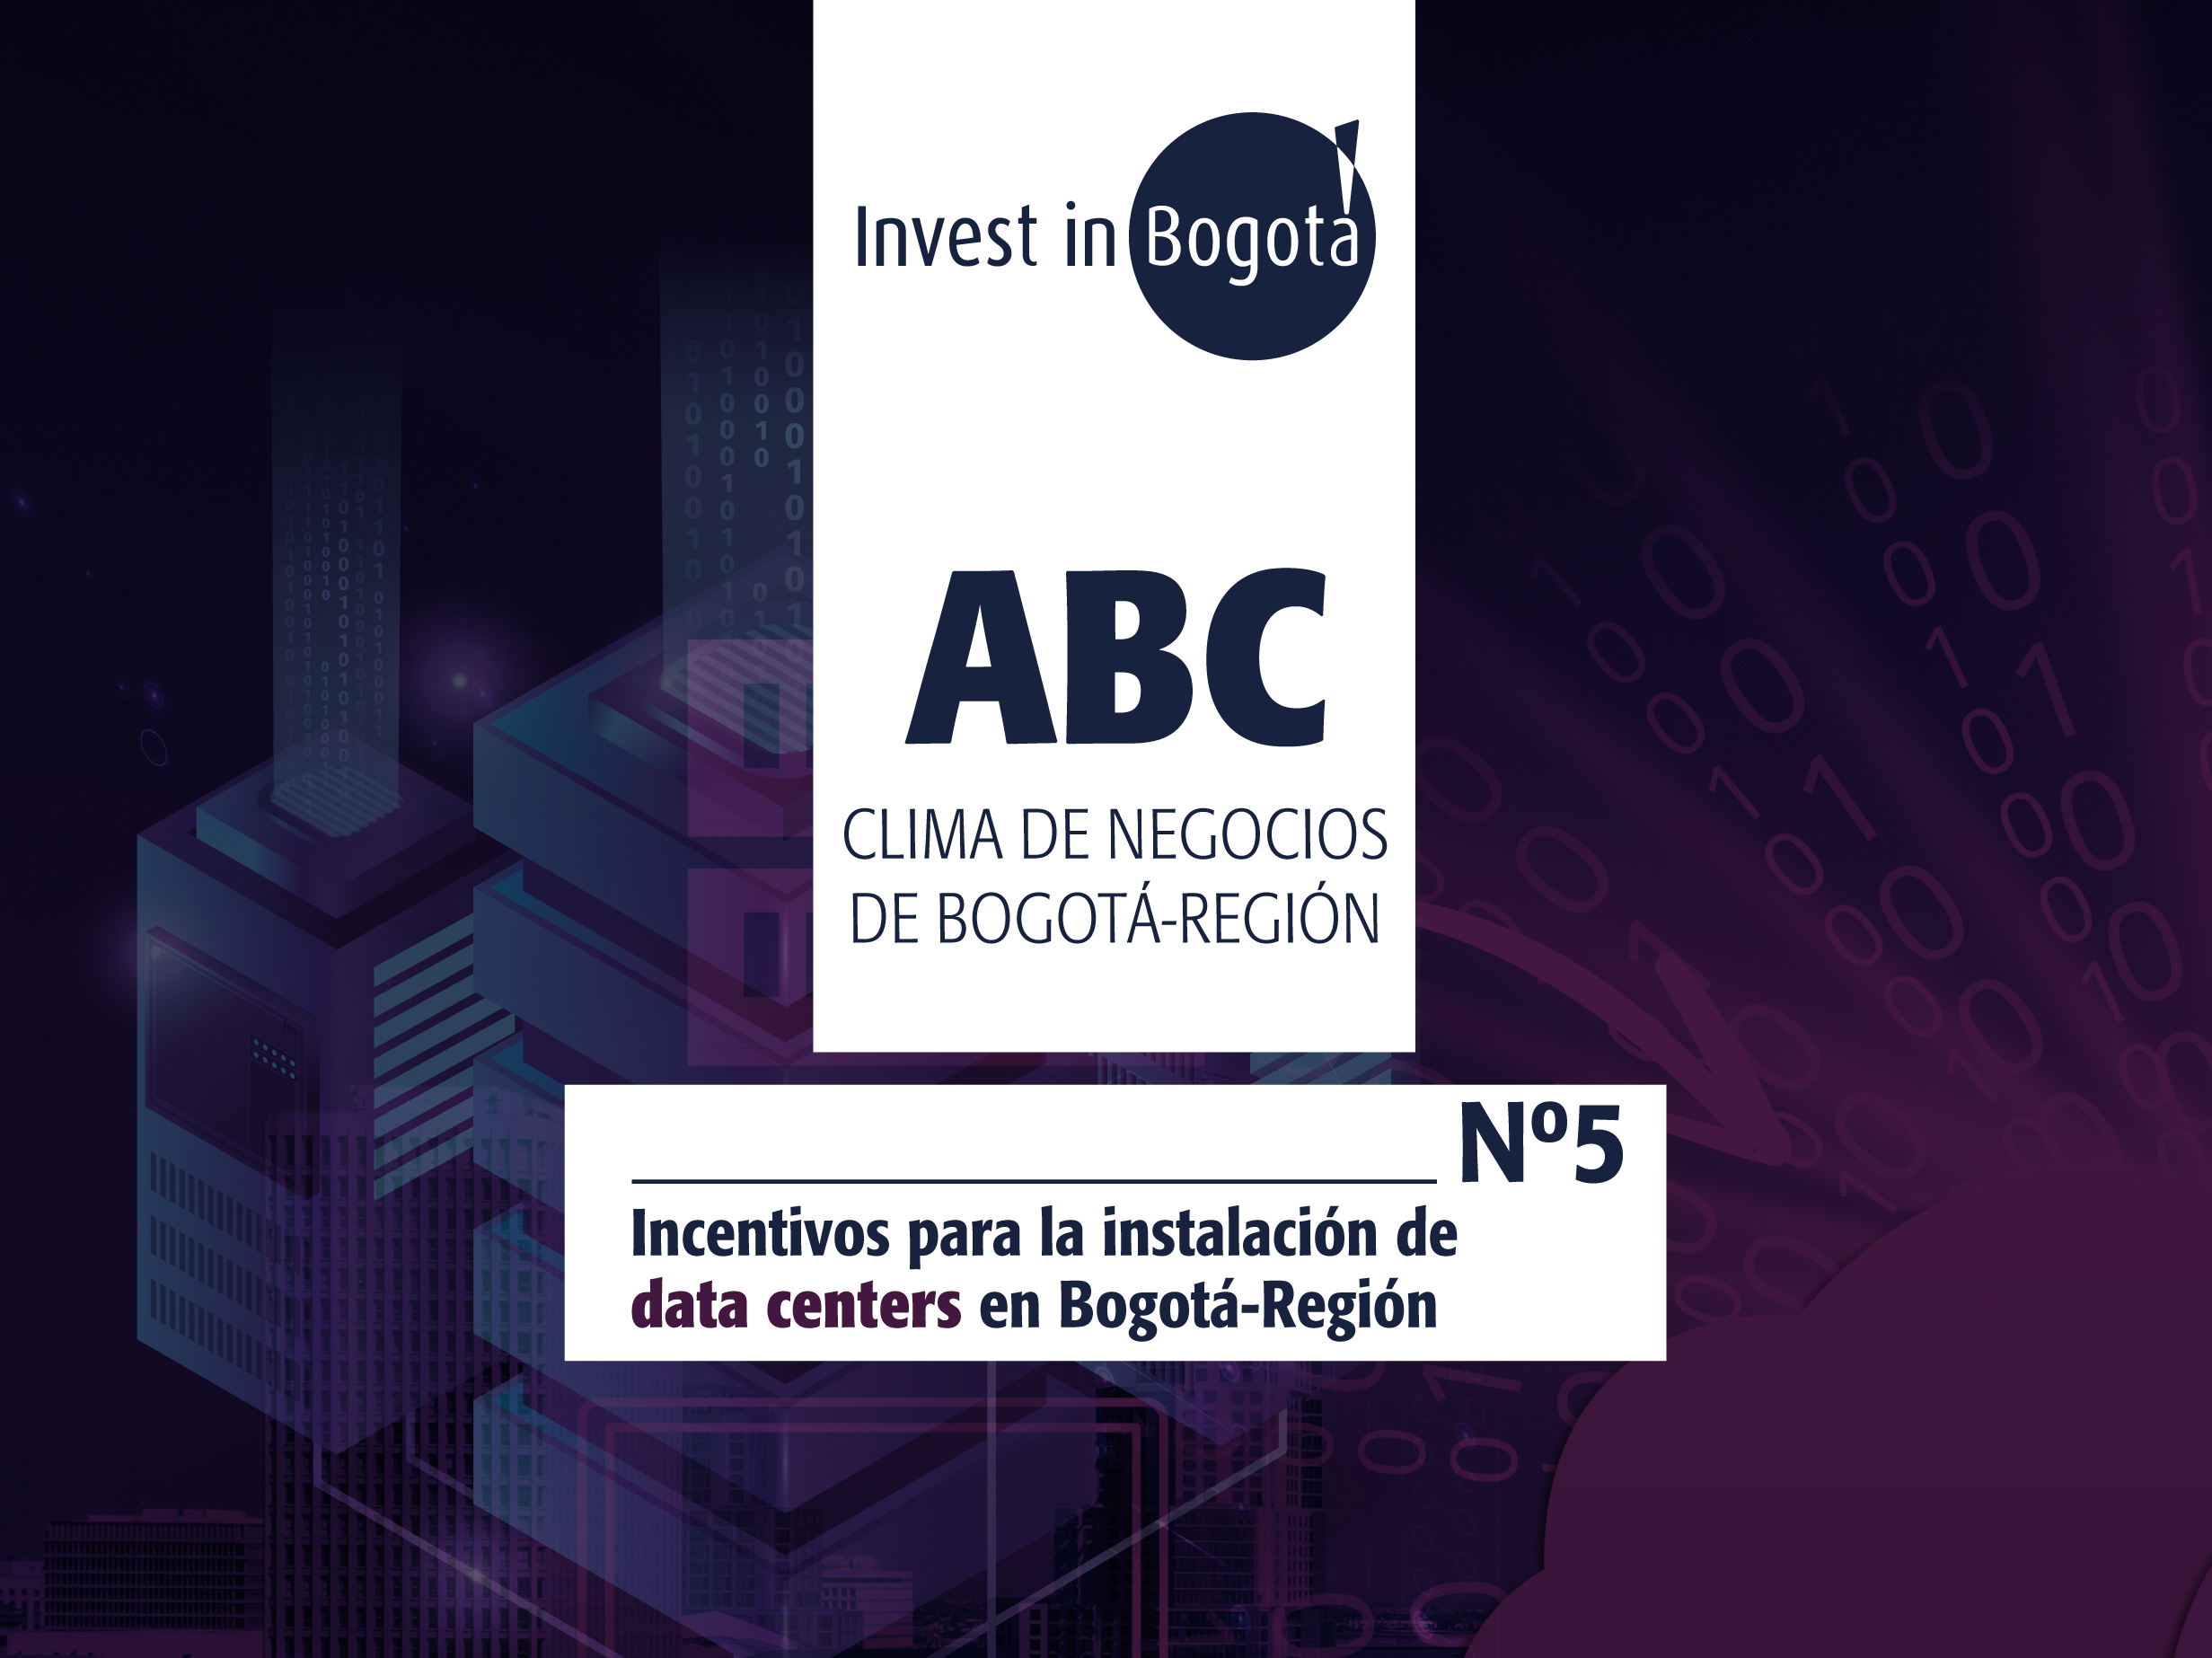 ABC - Incentivos para la instalación de data centers en Bogotá-Región